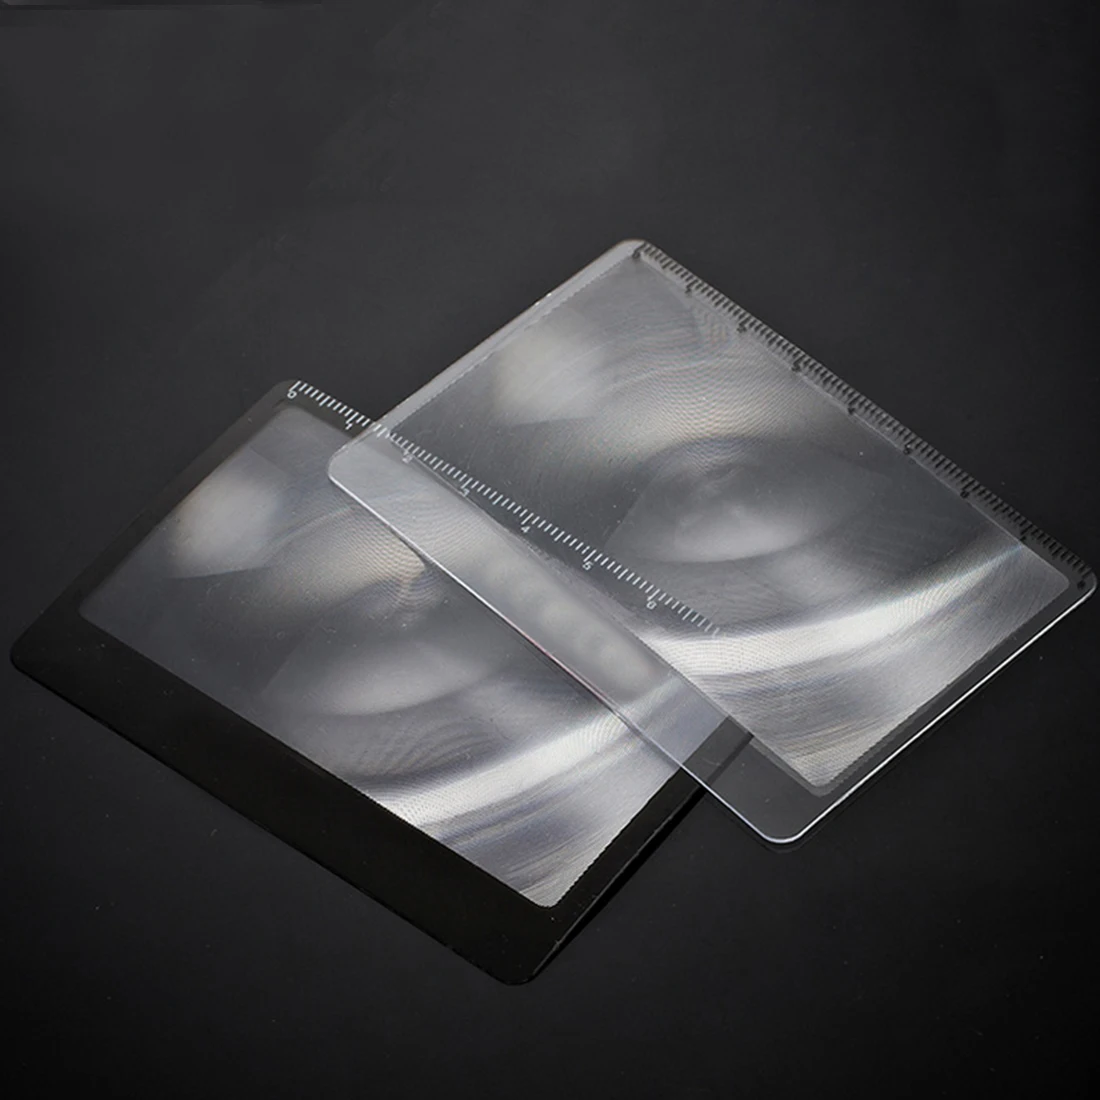 3 X Лупа портативная увеличительная линза Френеля 8,5x5,5 см размер кредитной карты прозрачное увеличительное стекло